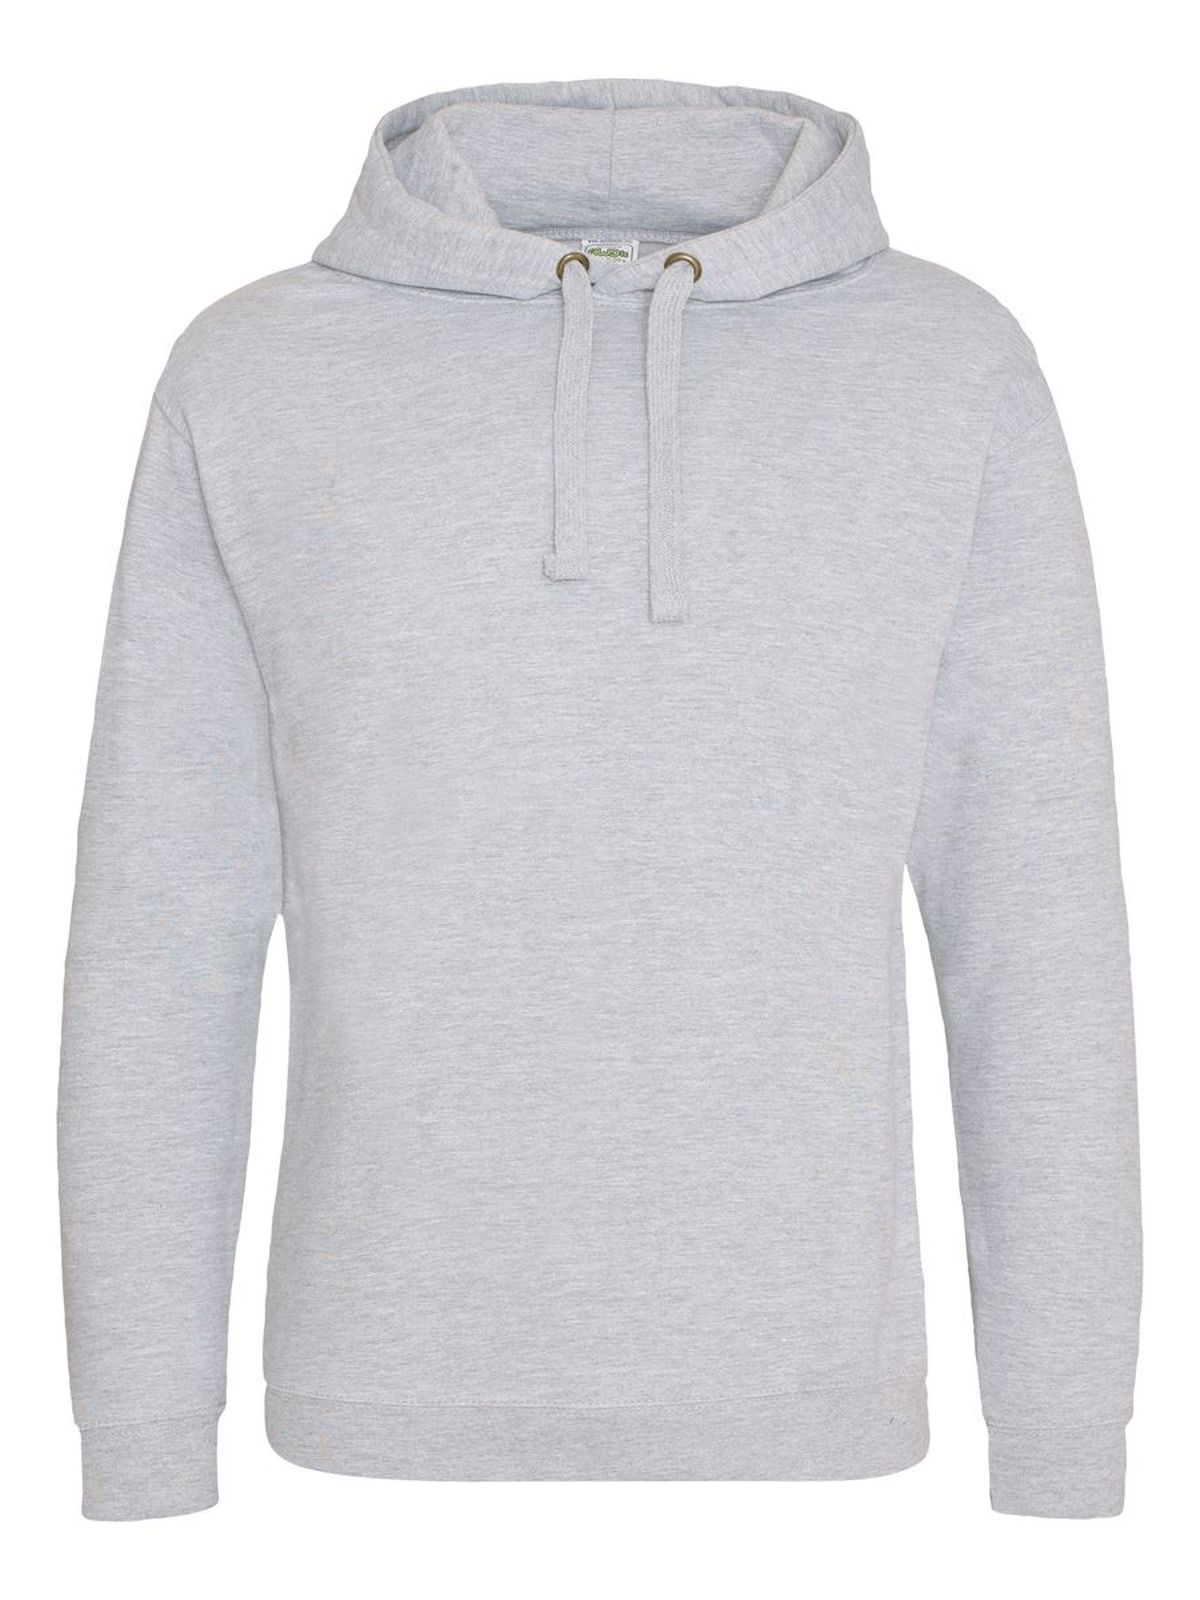 epic-print-hoodie-heather-grey.webp